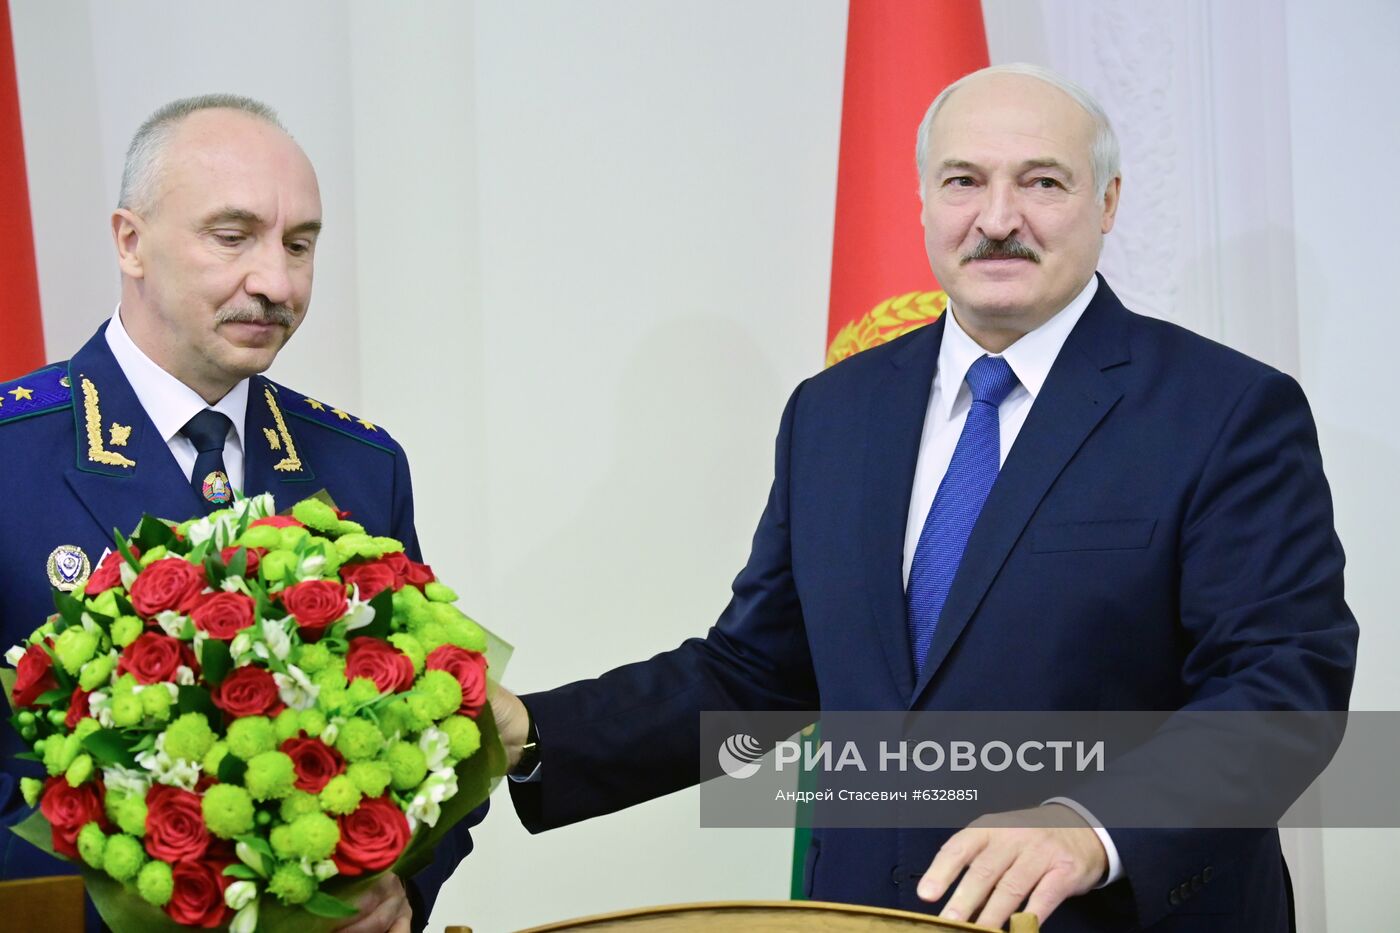 А. Лукашенко назначил А. Шведа новым генеральным прокурором Белоруссии